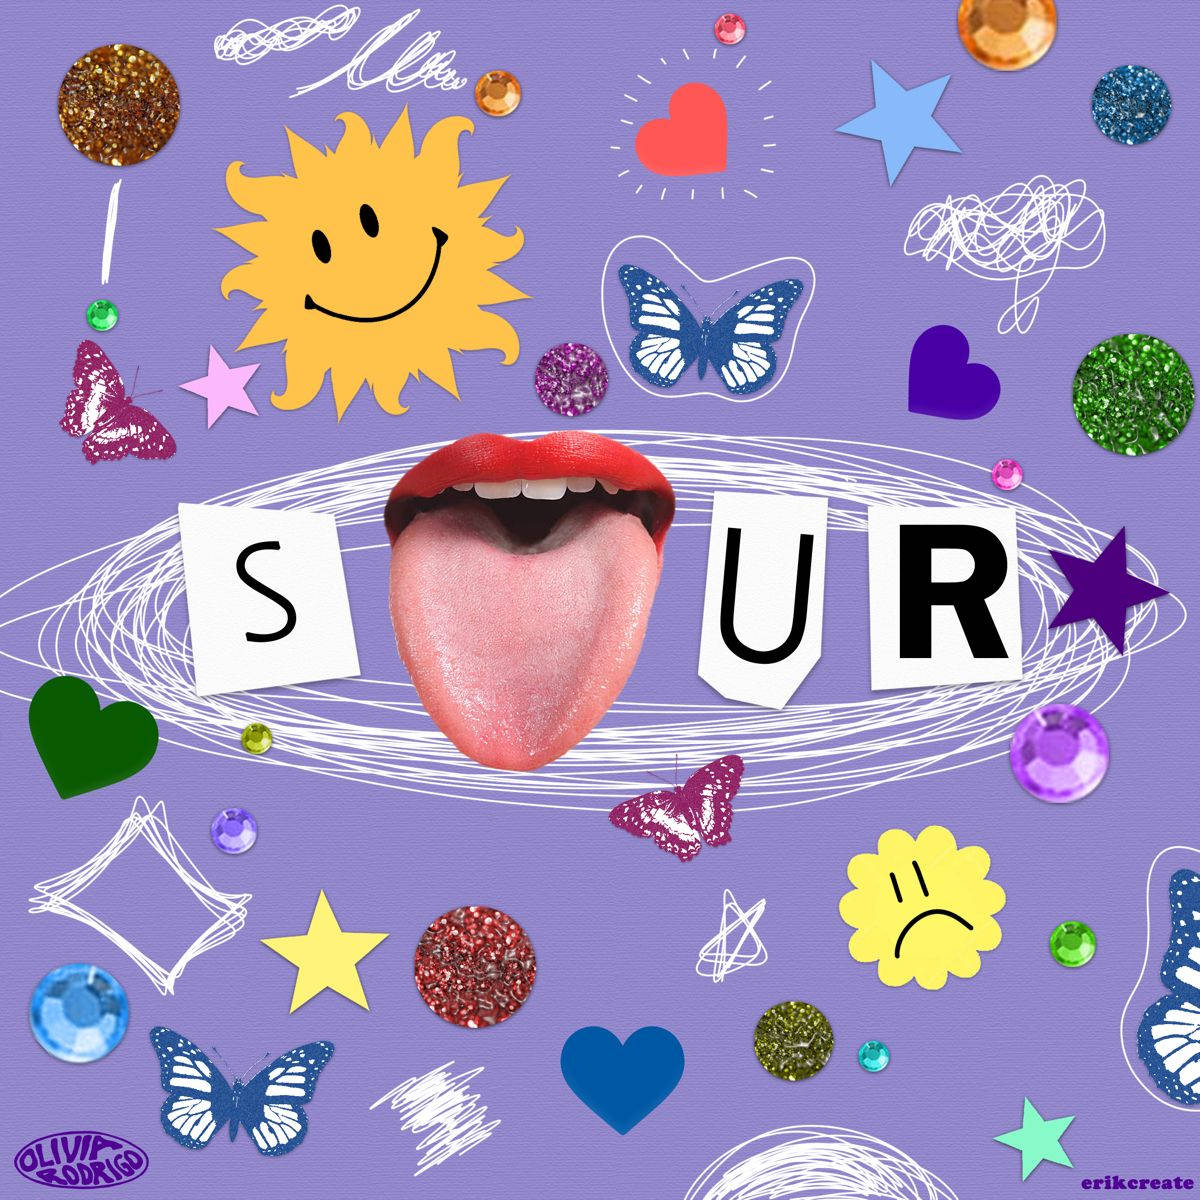 Olivia Rodrigo's Sour Album Cover Background